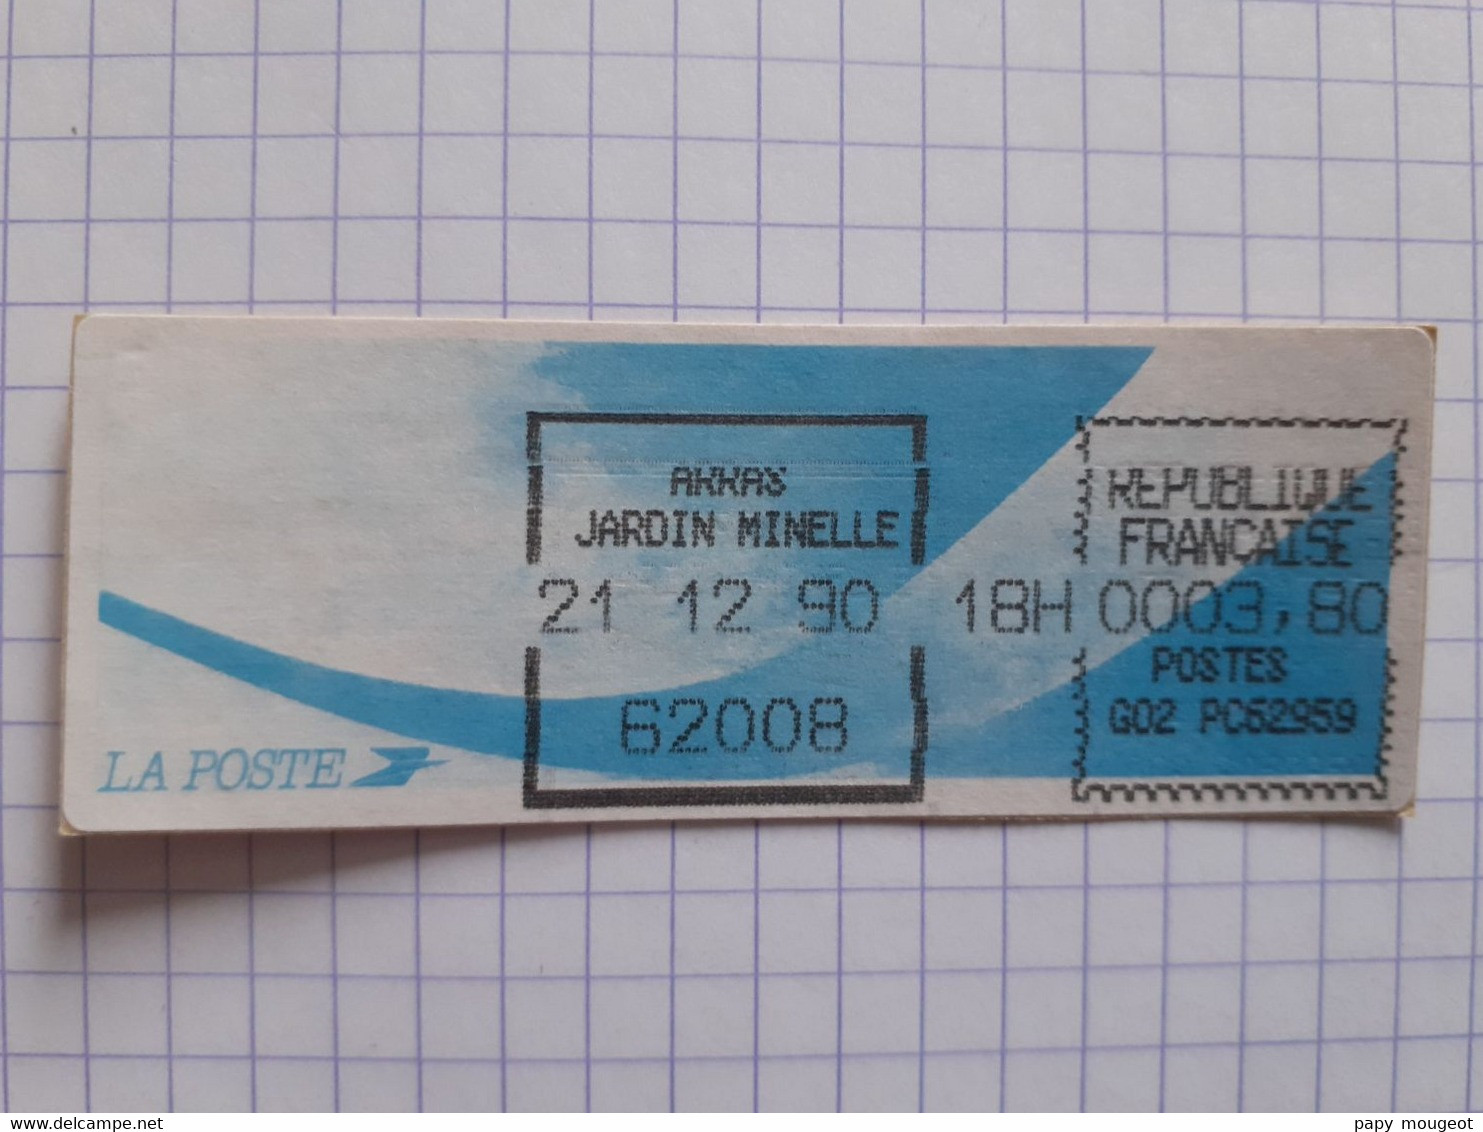 Arras Jardin Minelle 62008 - 21-12-90 - G02 PC62959 Tarif 3.80 - Encre Noire Imprimante Dérèglée - 1988 « Comète »